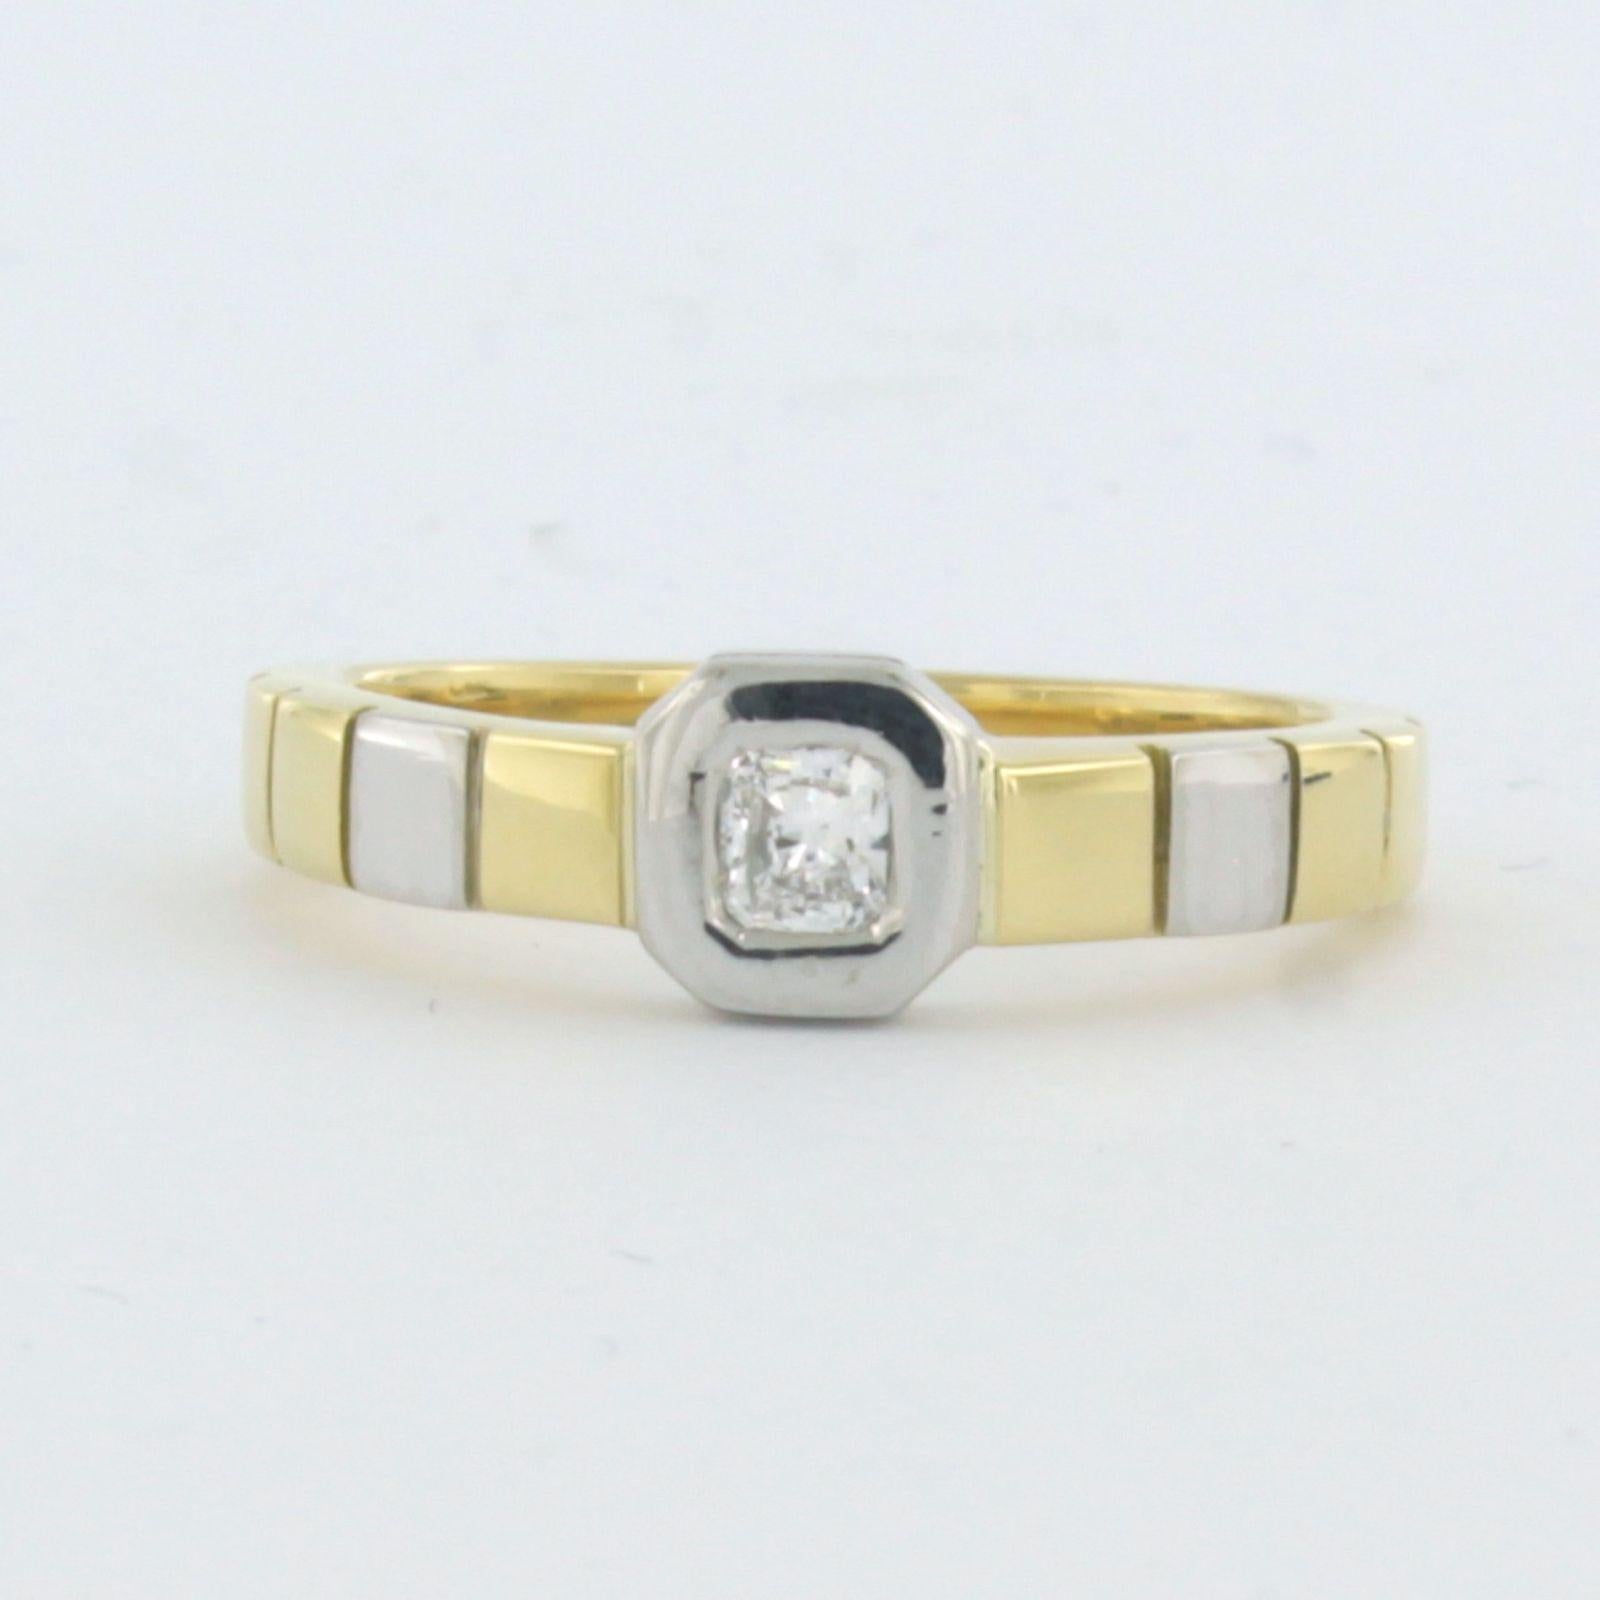 Ring aus 18 Karat Gold mit Platin, besetzt mit Diamanten im Smaragdschliff. 0,30ct - F/G - VS/SI - Ringgröße 8,0 US / 18(57) EU

detaillierte Beschreibung:

Die Oberseite des Rings ist 6,4 mm breit und 3,0 mm hoch.

Ringgröße 8.0 US / 18(57) EU, der